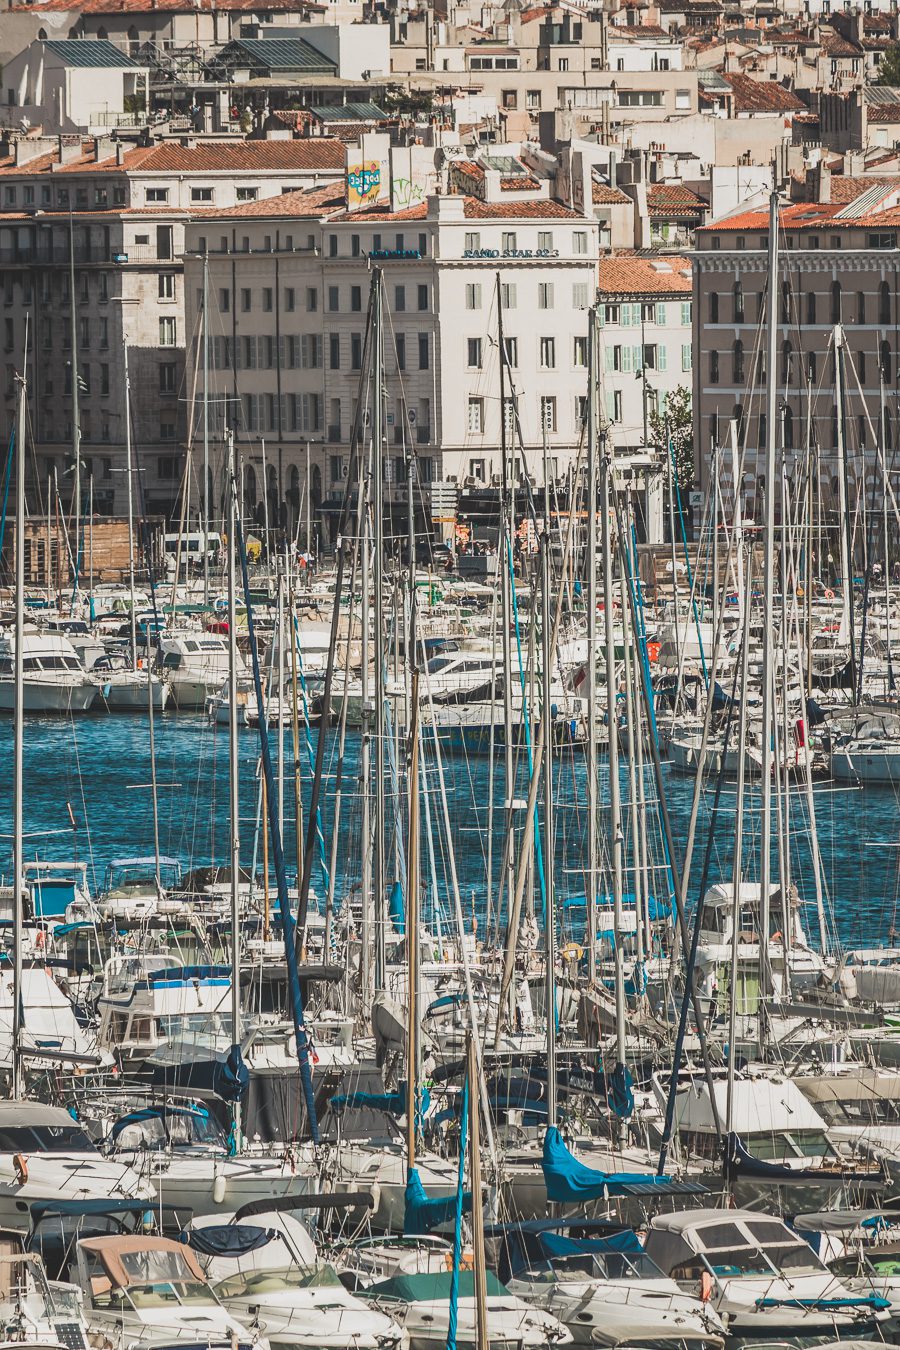 Voici un guide pour passer un week end à Marseille. Marseille est la destination idéale, offrant des paysages époustouflants, une cuisine délicieuse... Qu'il s'agisse d'explorer la riche culture de la ville, de se détendre sur ses plages immaculées ou de goûter à certains de ses plats de renommée mondiale, il y en a pour tous les goûts dans cette ville portuaire animée. Alors faites vos valises et préparez-vous pour un week end à Marseille que vous n'oublierez pas de sitôt.